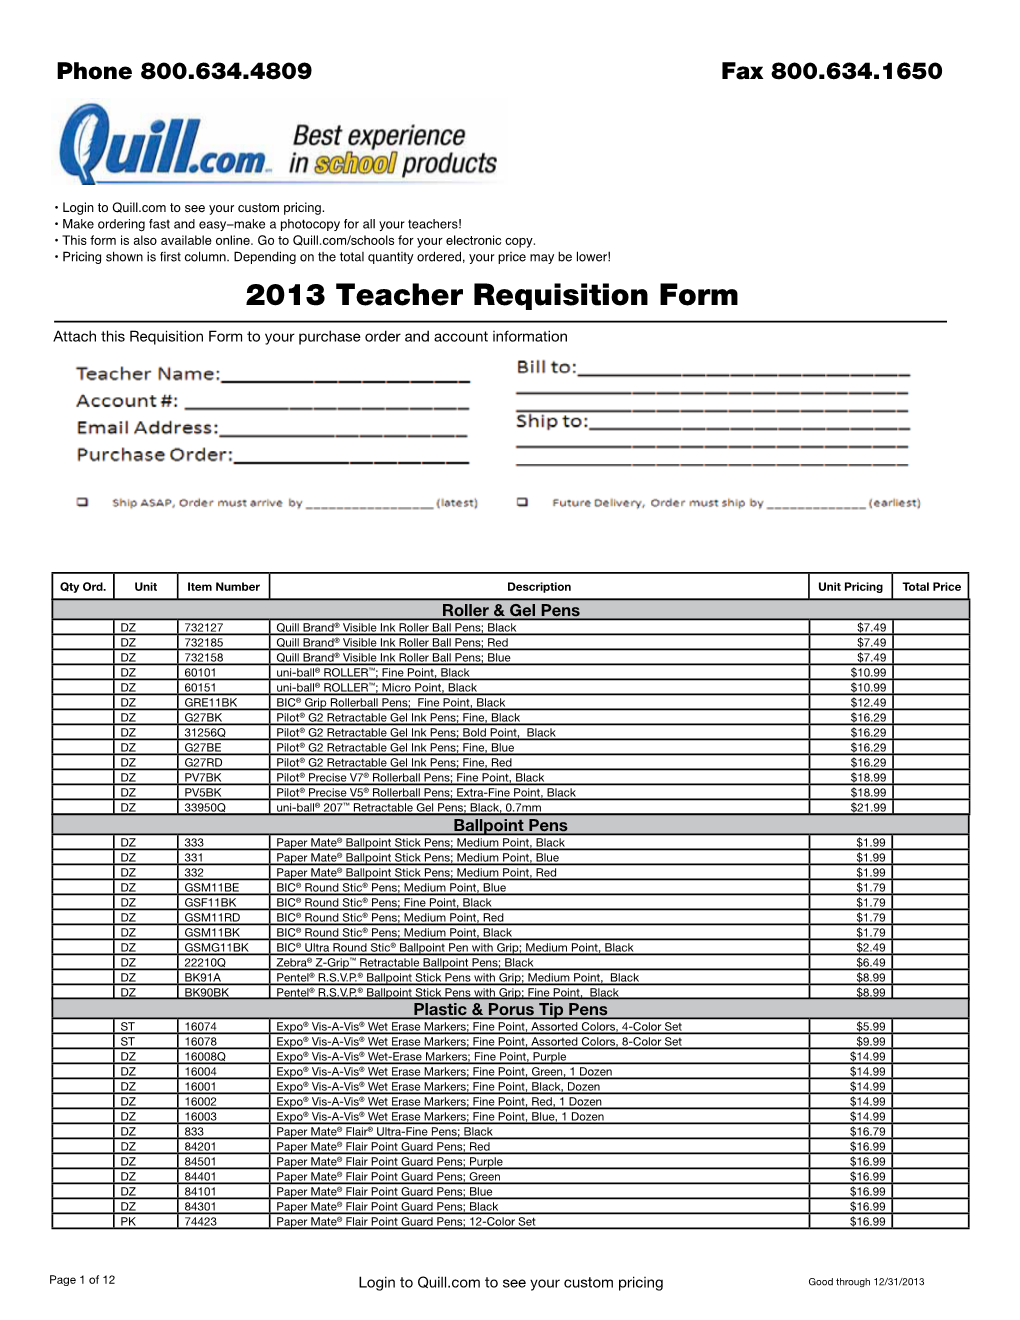 2013 Teacher Requisition Form